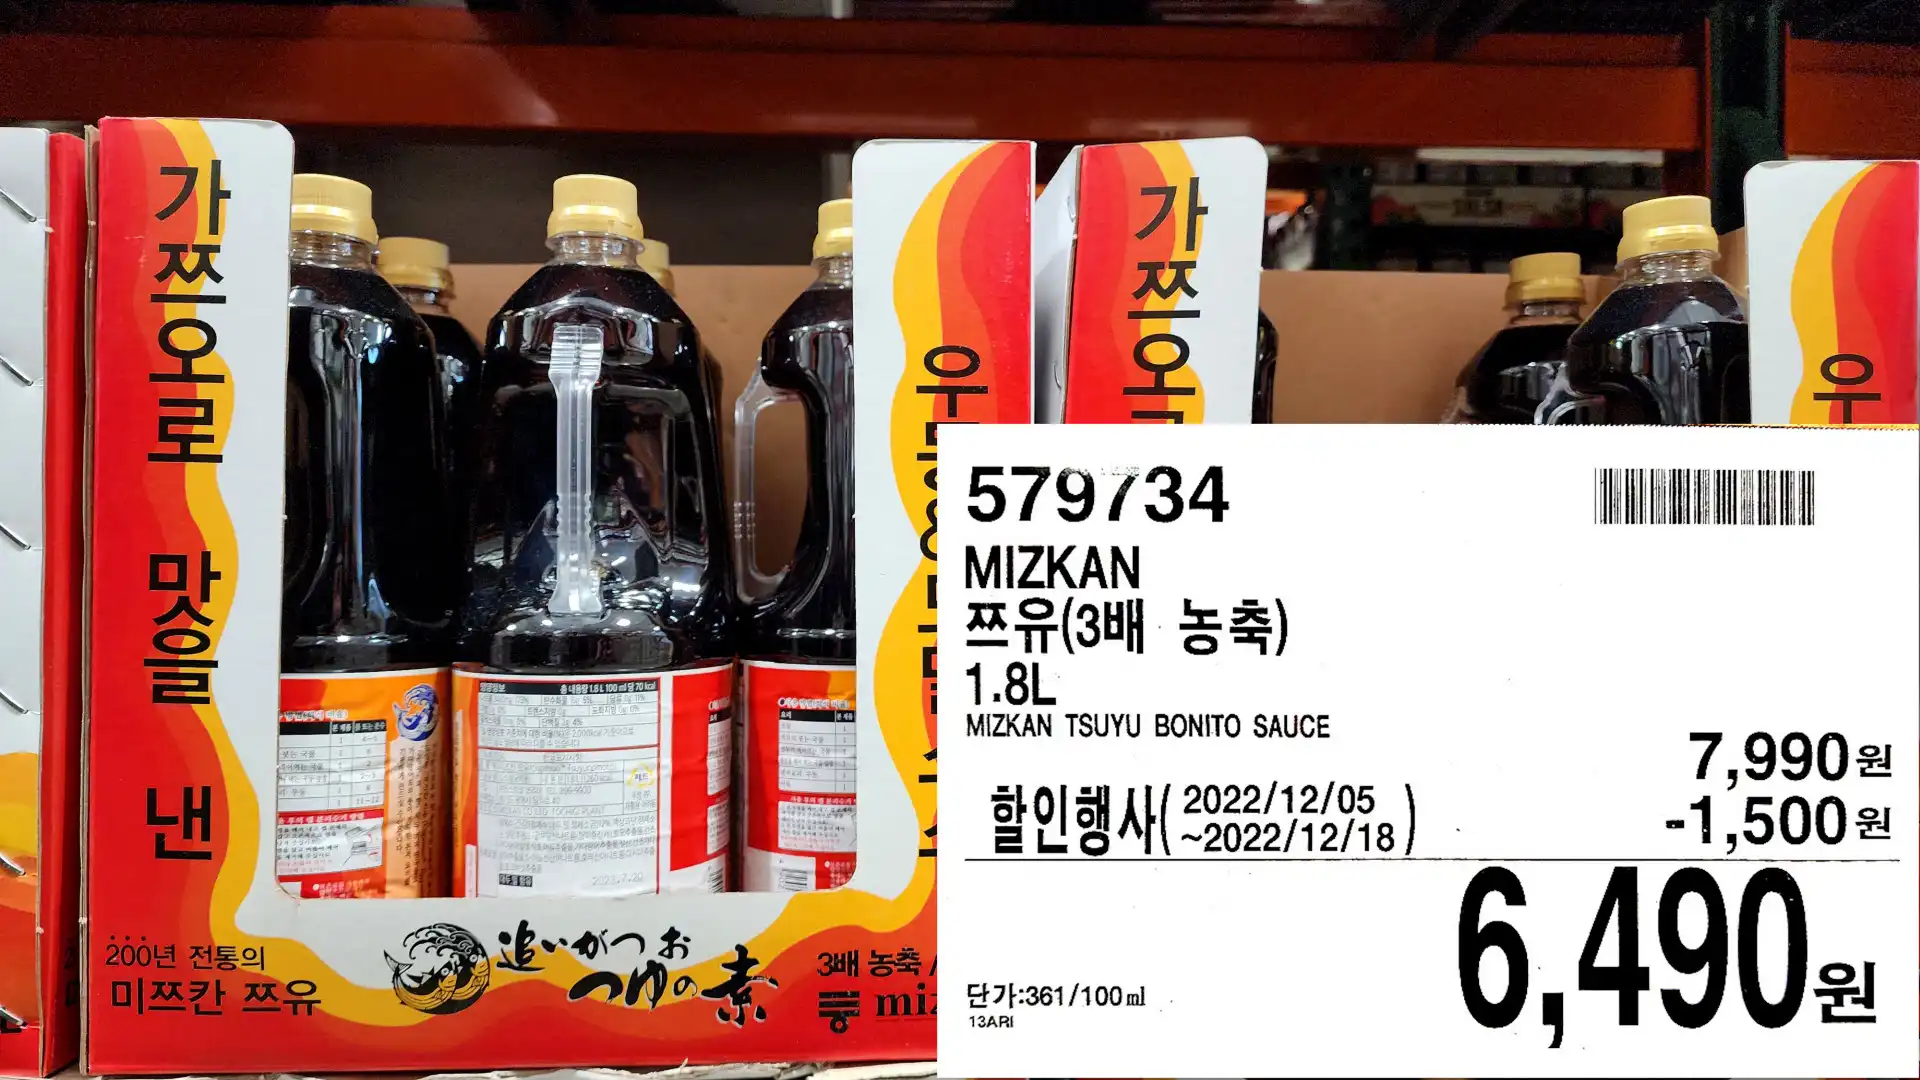 MIZKAN
쯔유(3배 농축)
1.8L
MIZKAN TSUYU BONITO SAUCE
6&#44;490원